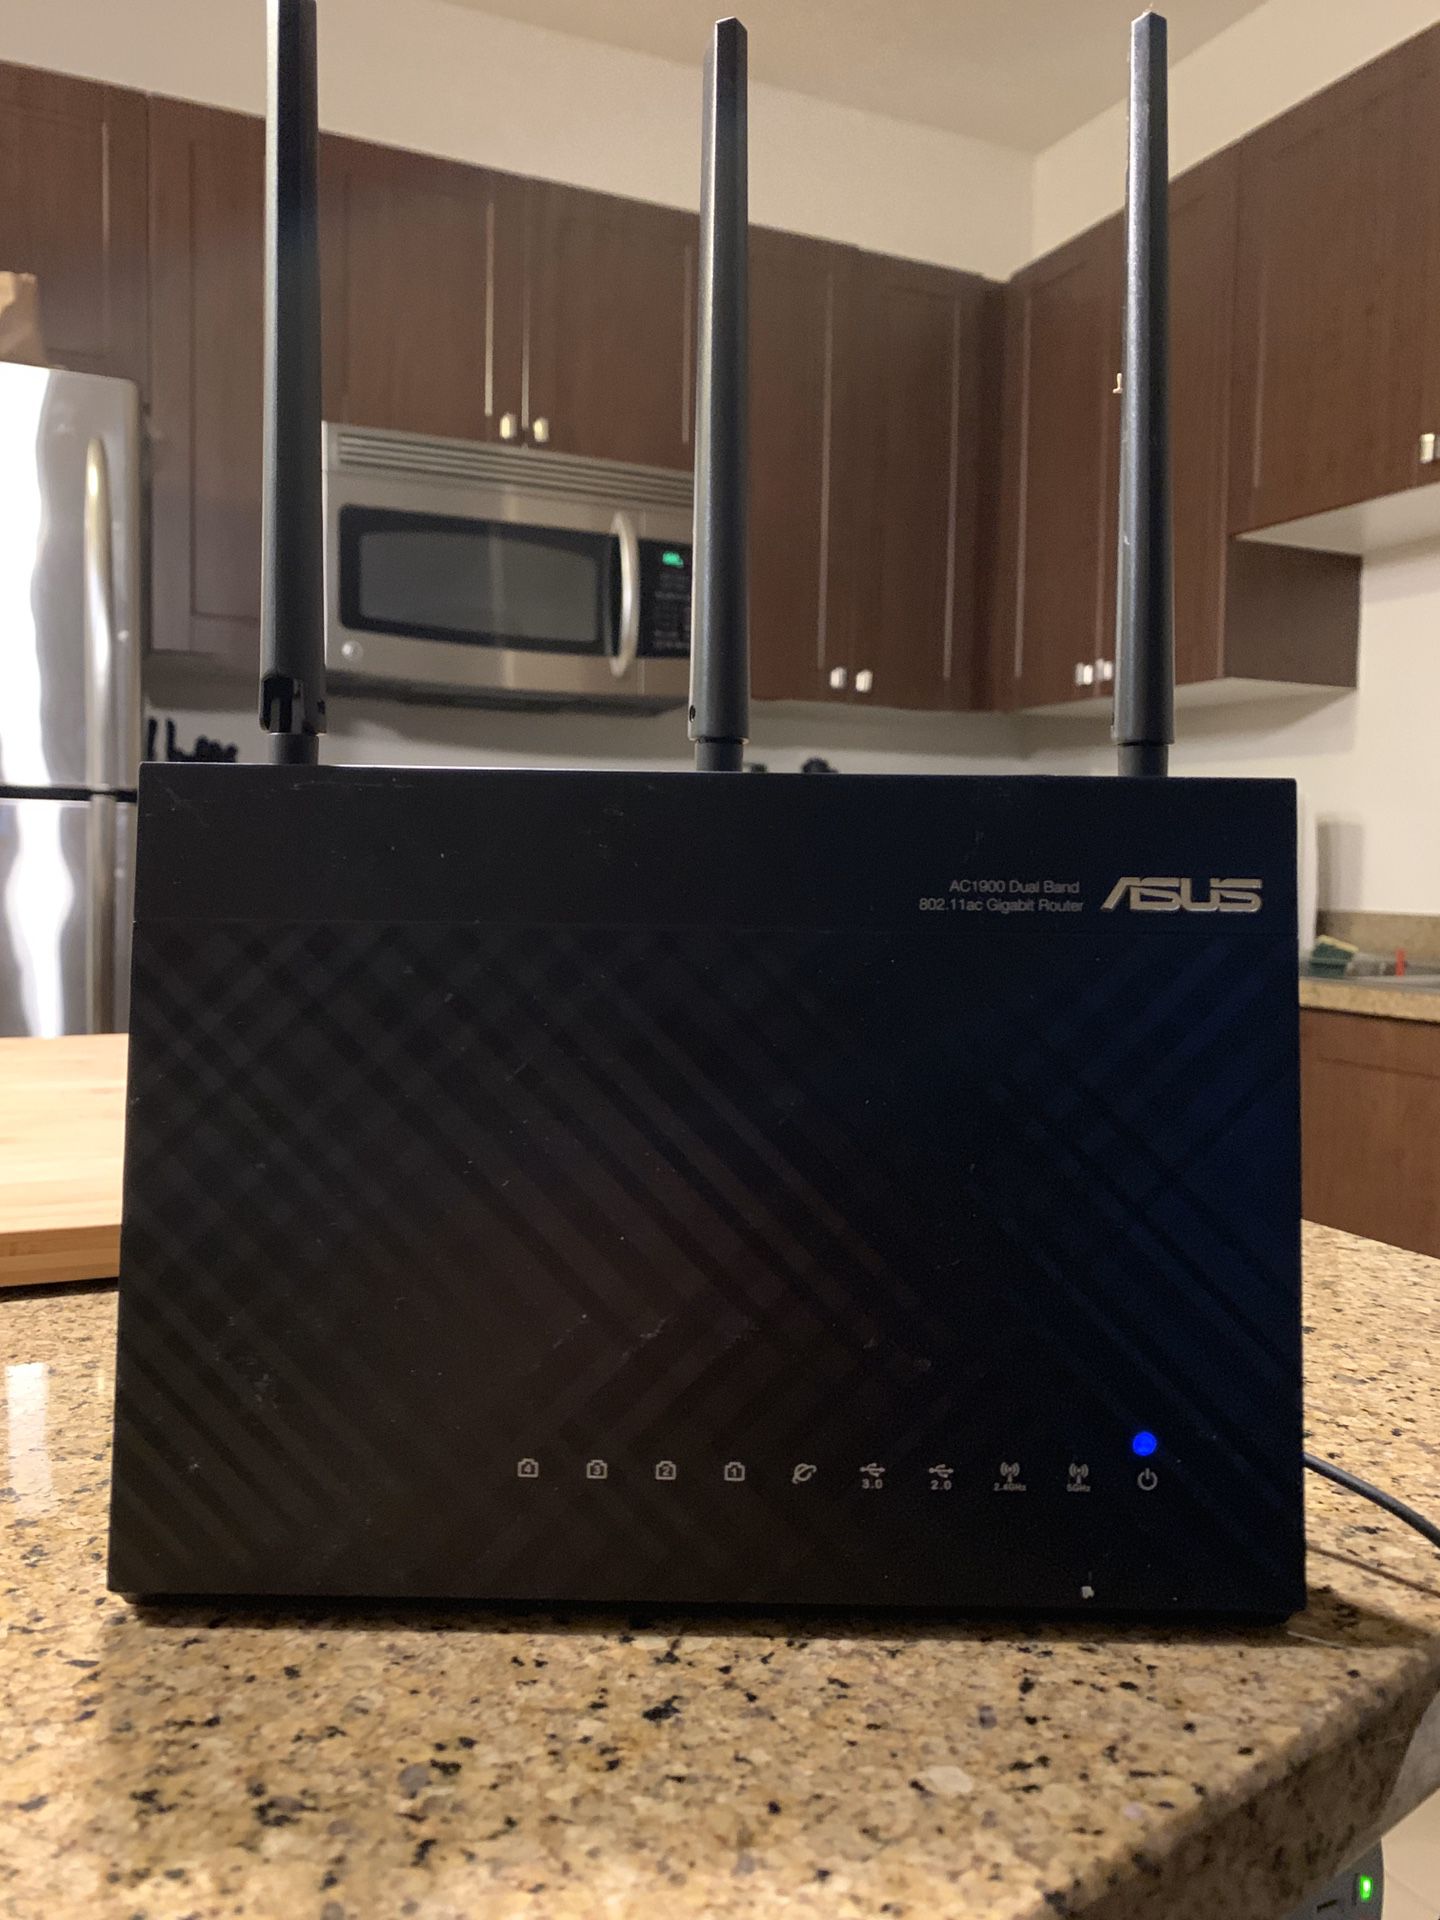 ASUS gigabit router RT-AC68u model